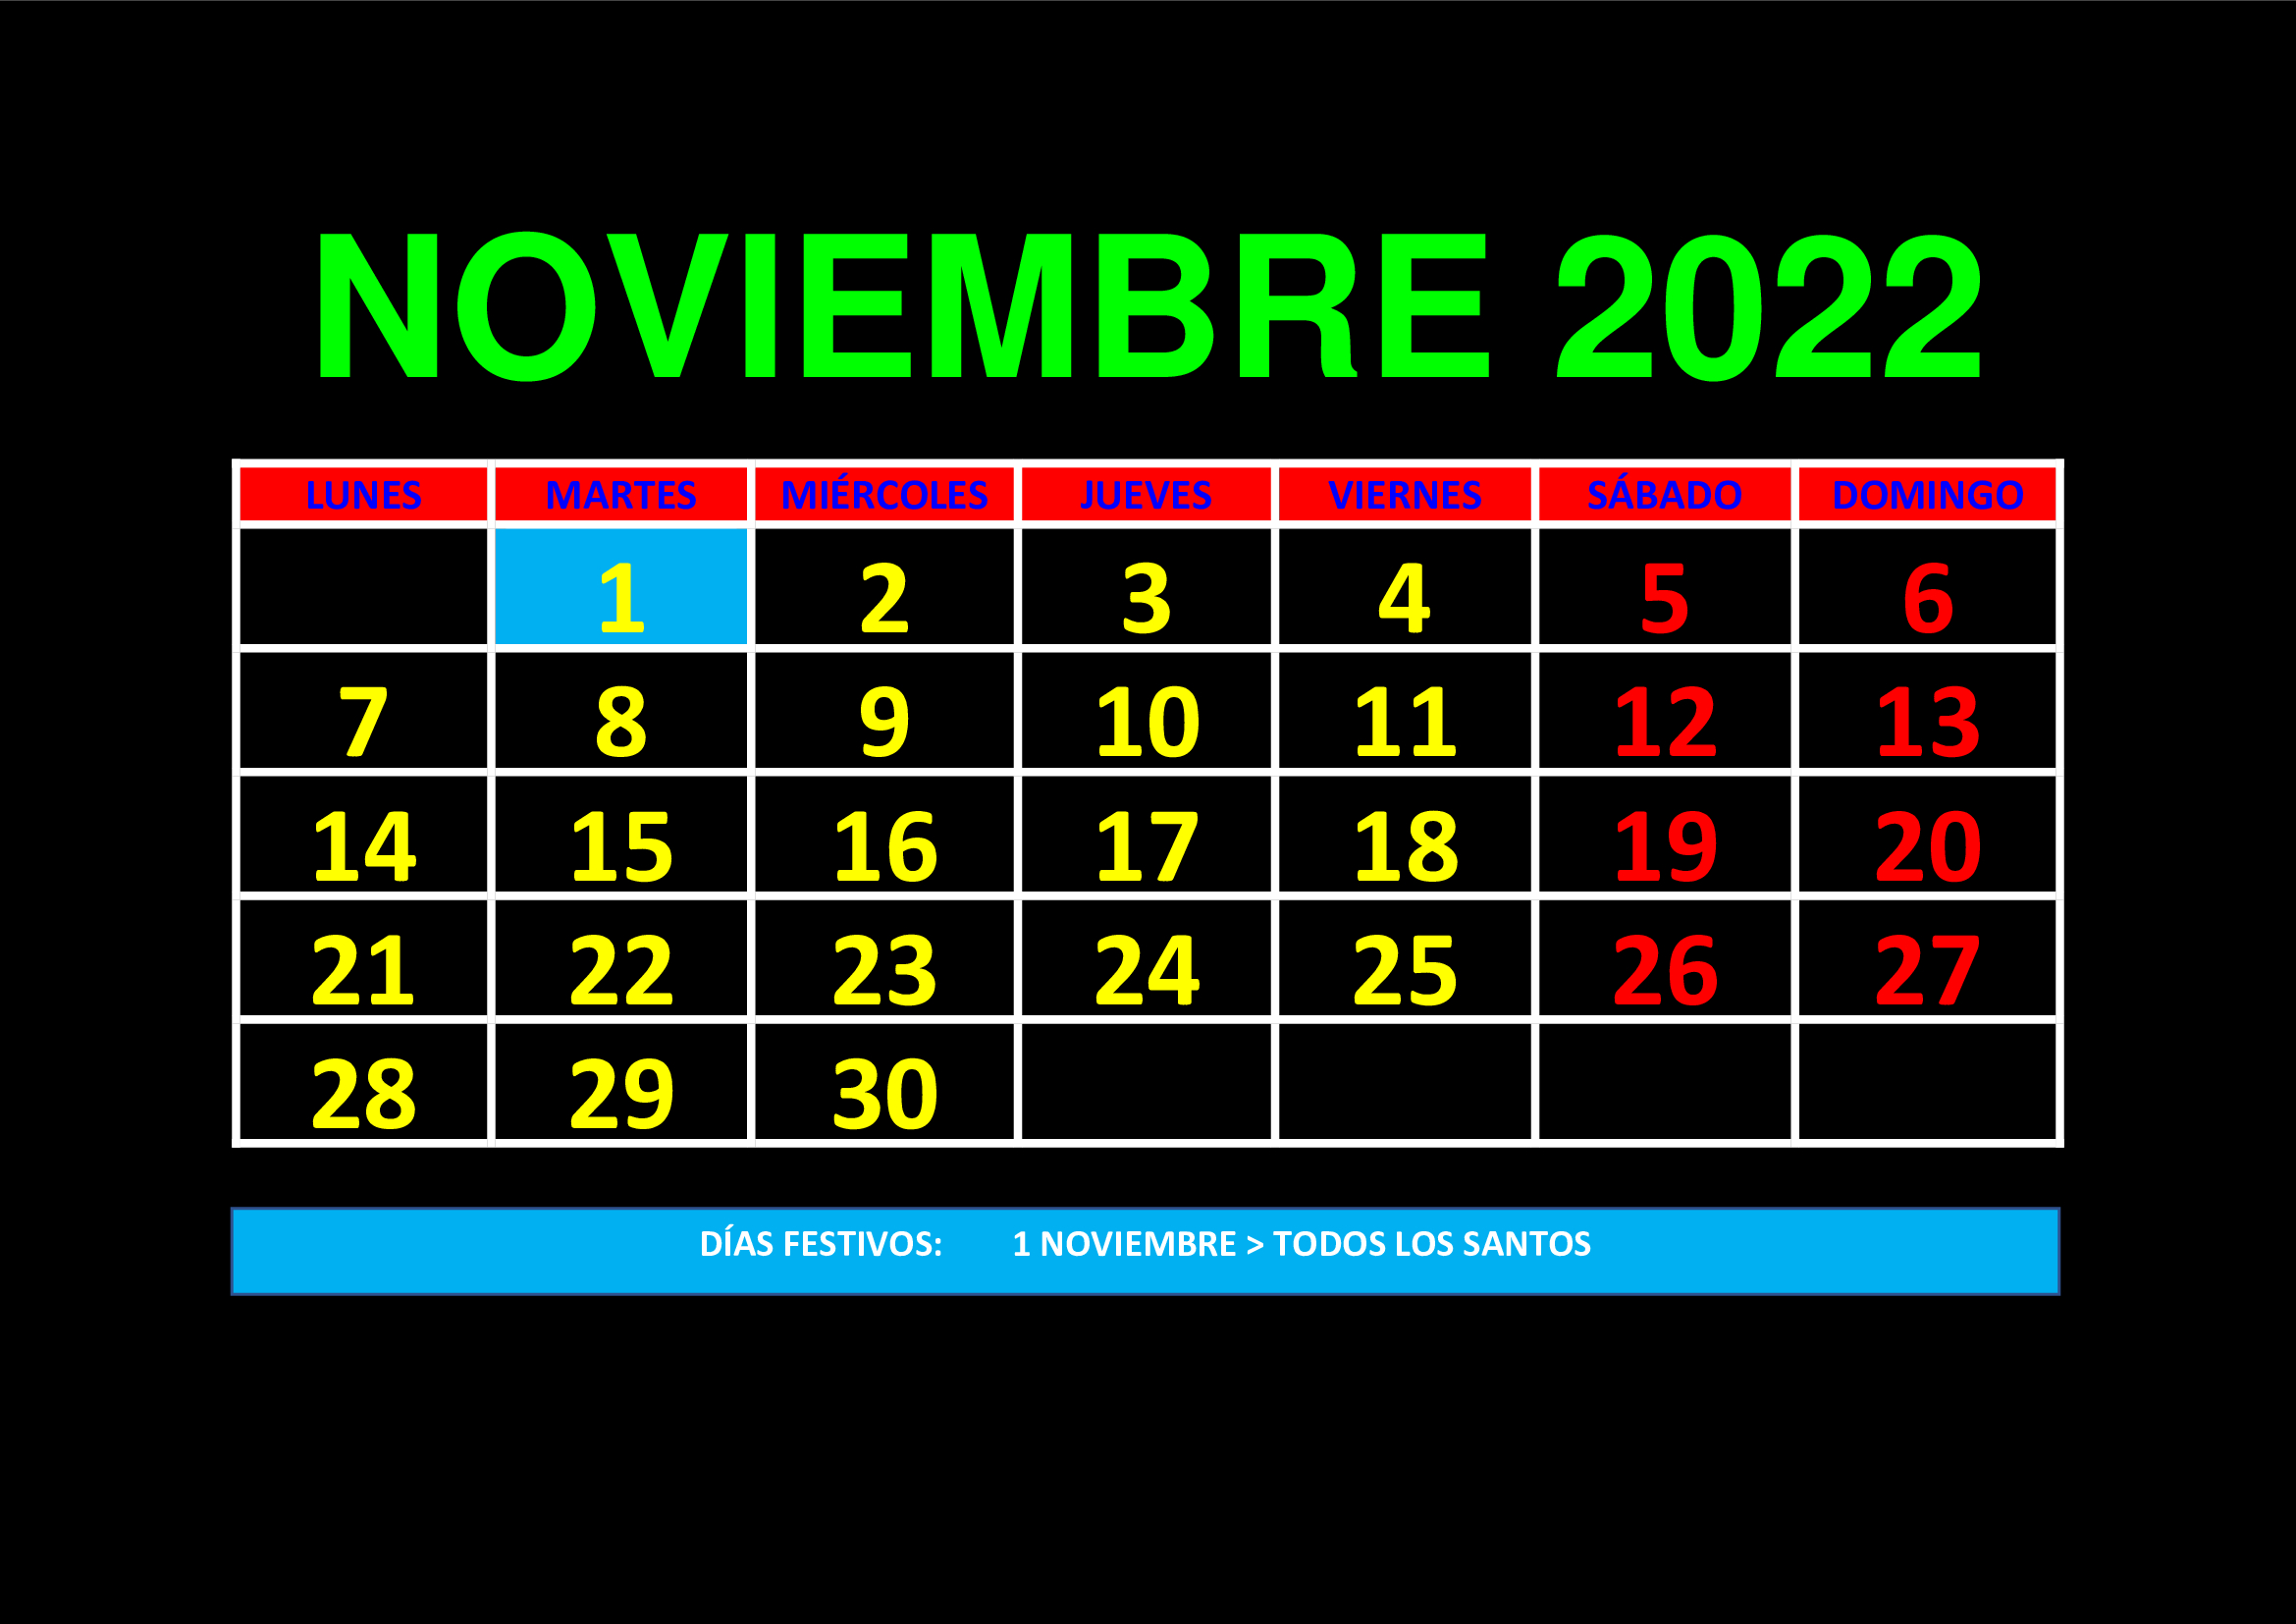 La imagen muestra el mes de noviembre de 2022